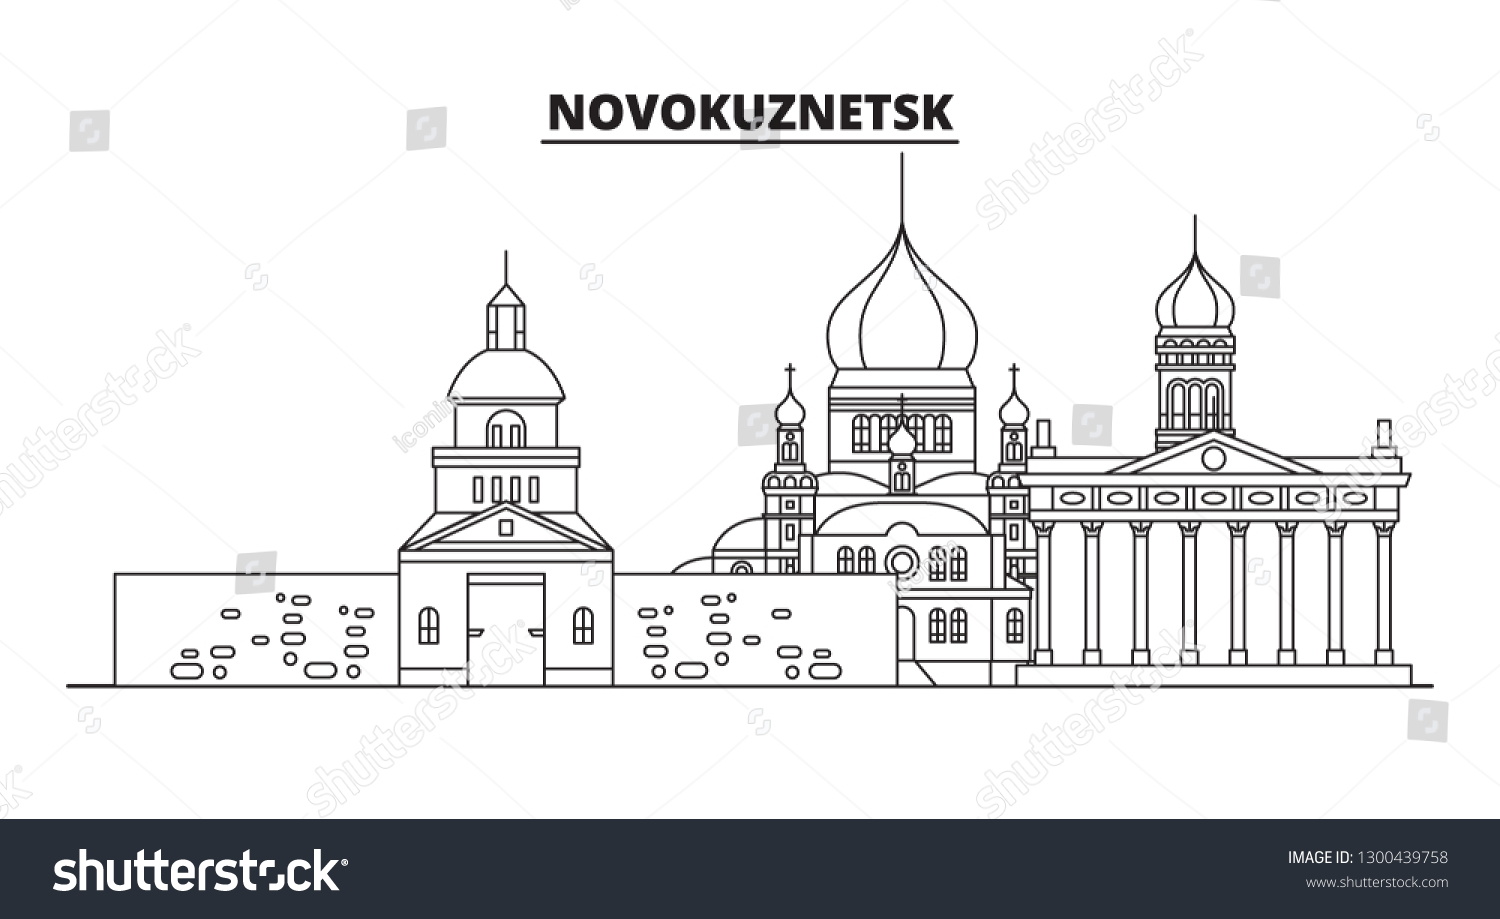 Кузнецкая крепость Новокузнецк рисунок